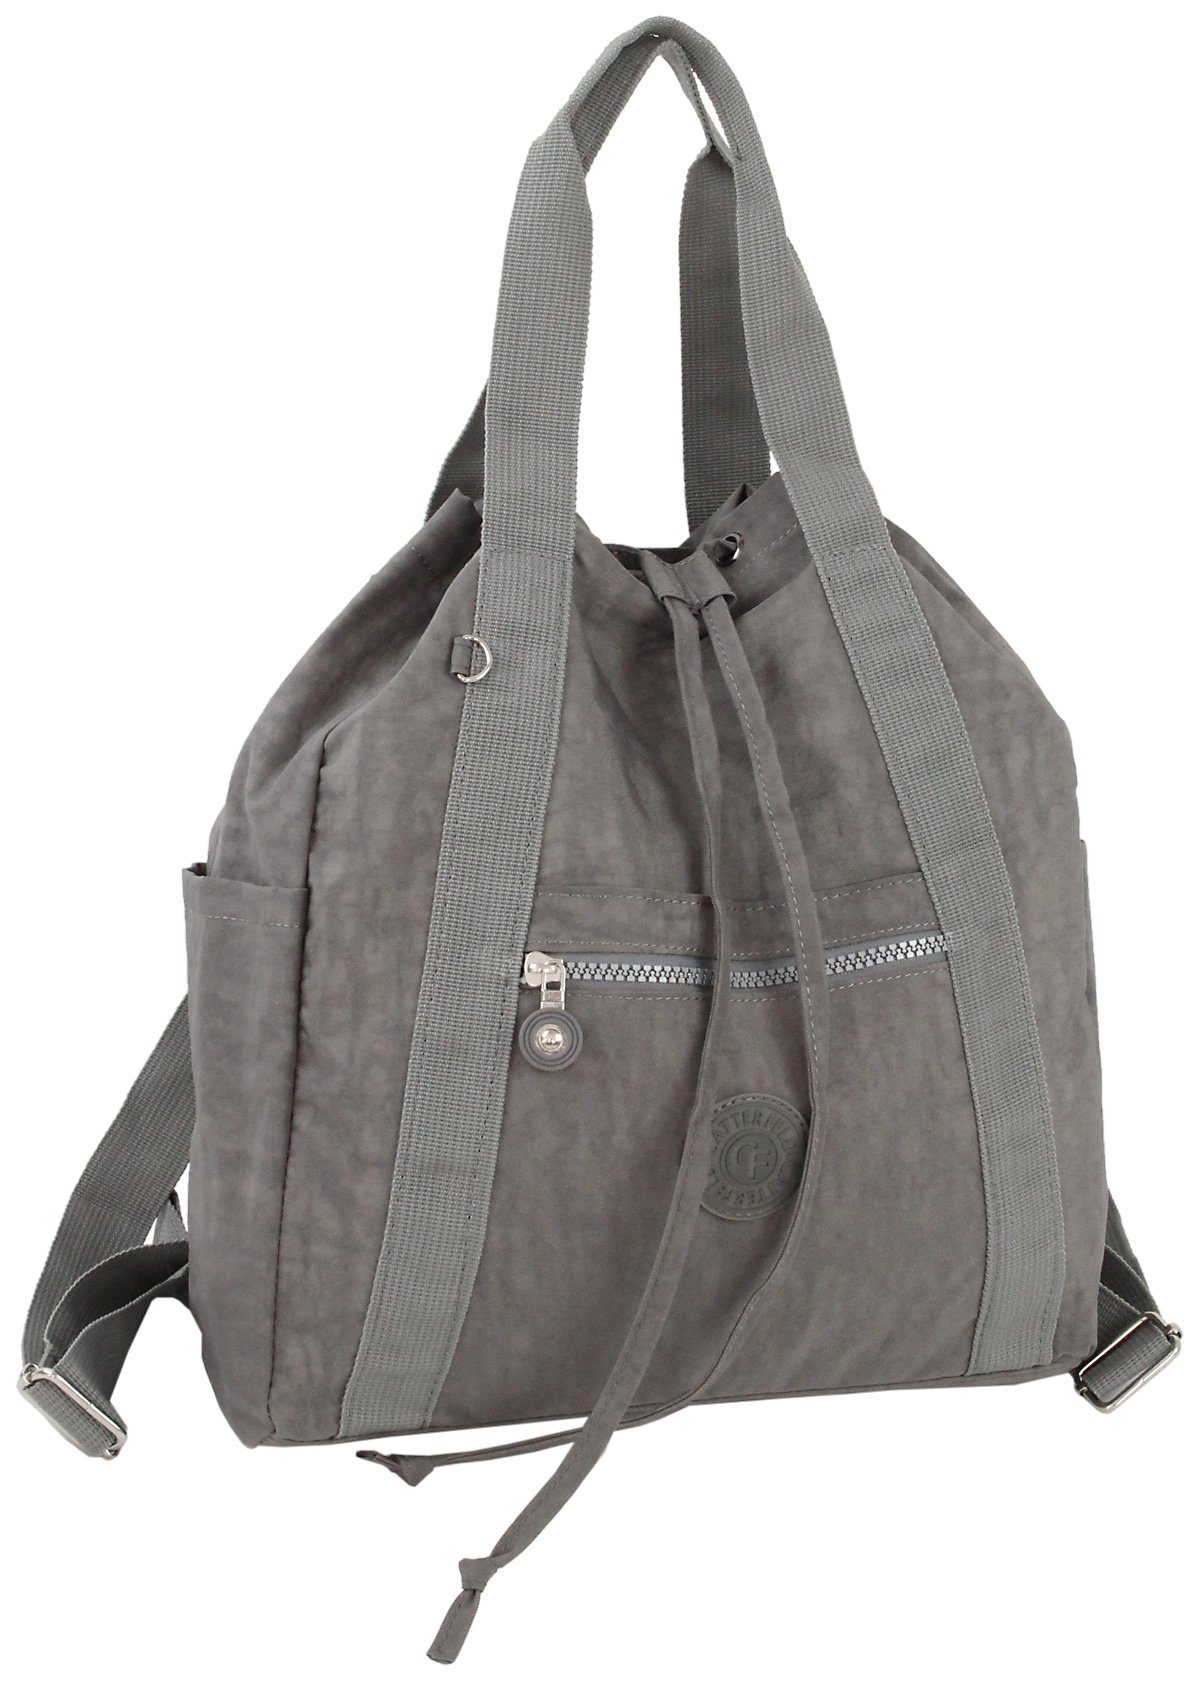 in CF Einem, Cityrucksack CATTERFELD 2in1 Grau und Leicht Handtasche Freizeitrucksack/Schultertasche, leichter